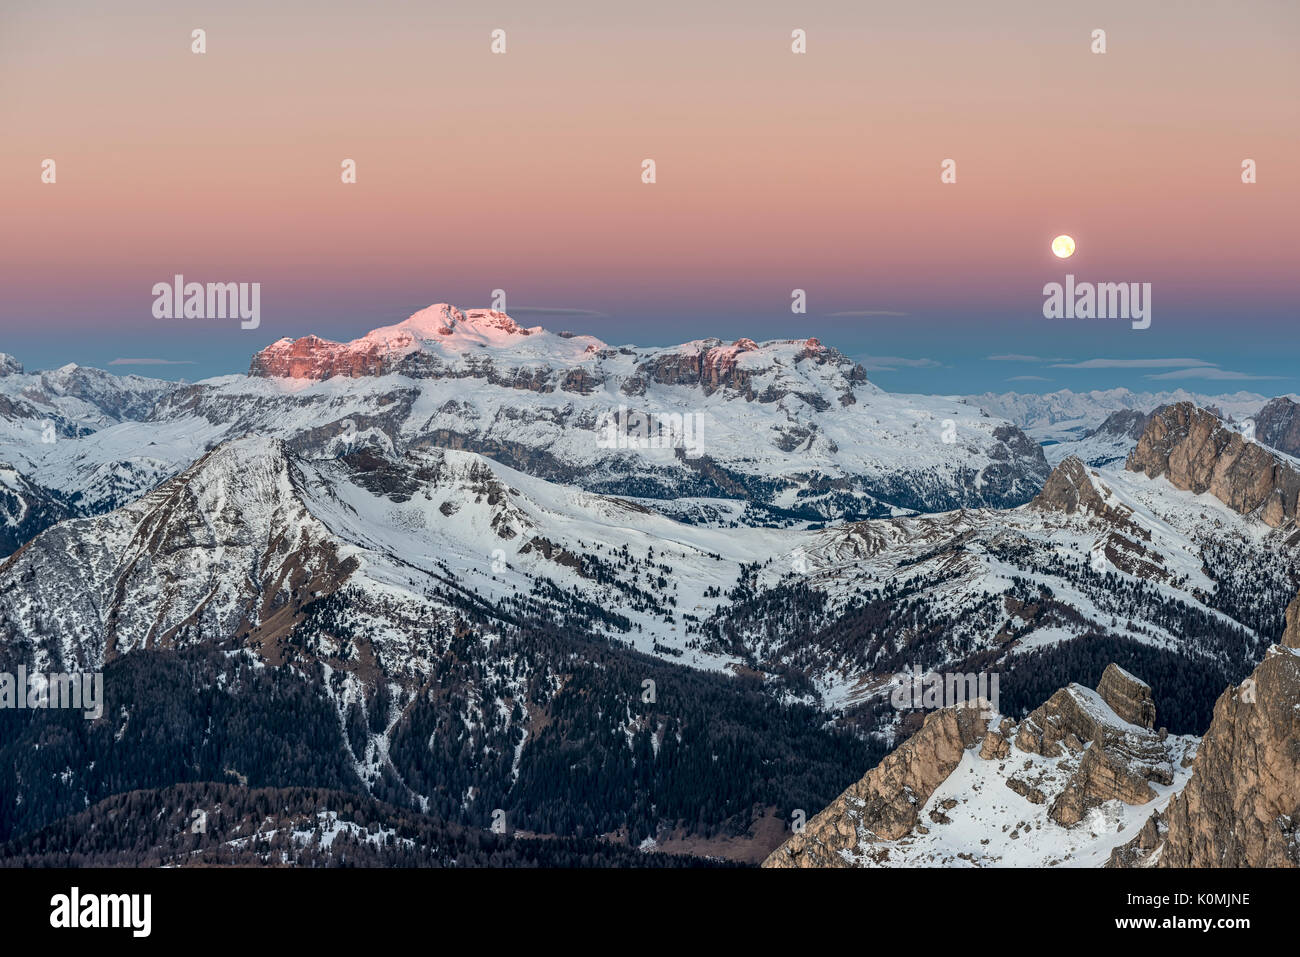 Nuvolau, Dolomiten, Venetien, Italien. Twilight und Vollmond in den Dolomiten mit den Gipfeln der Sellagruppe Stockfoto